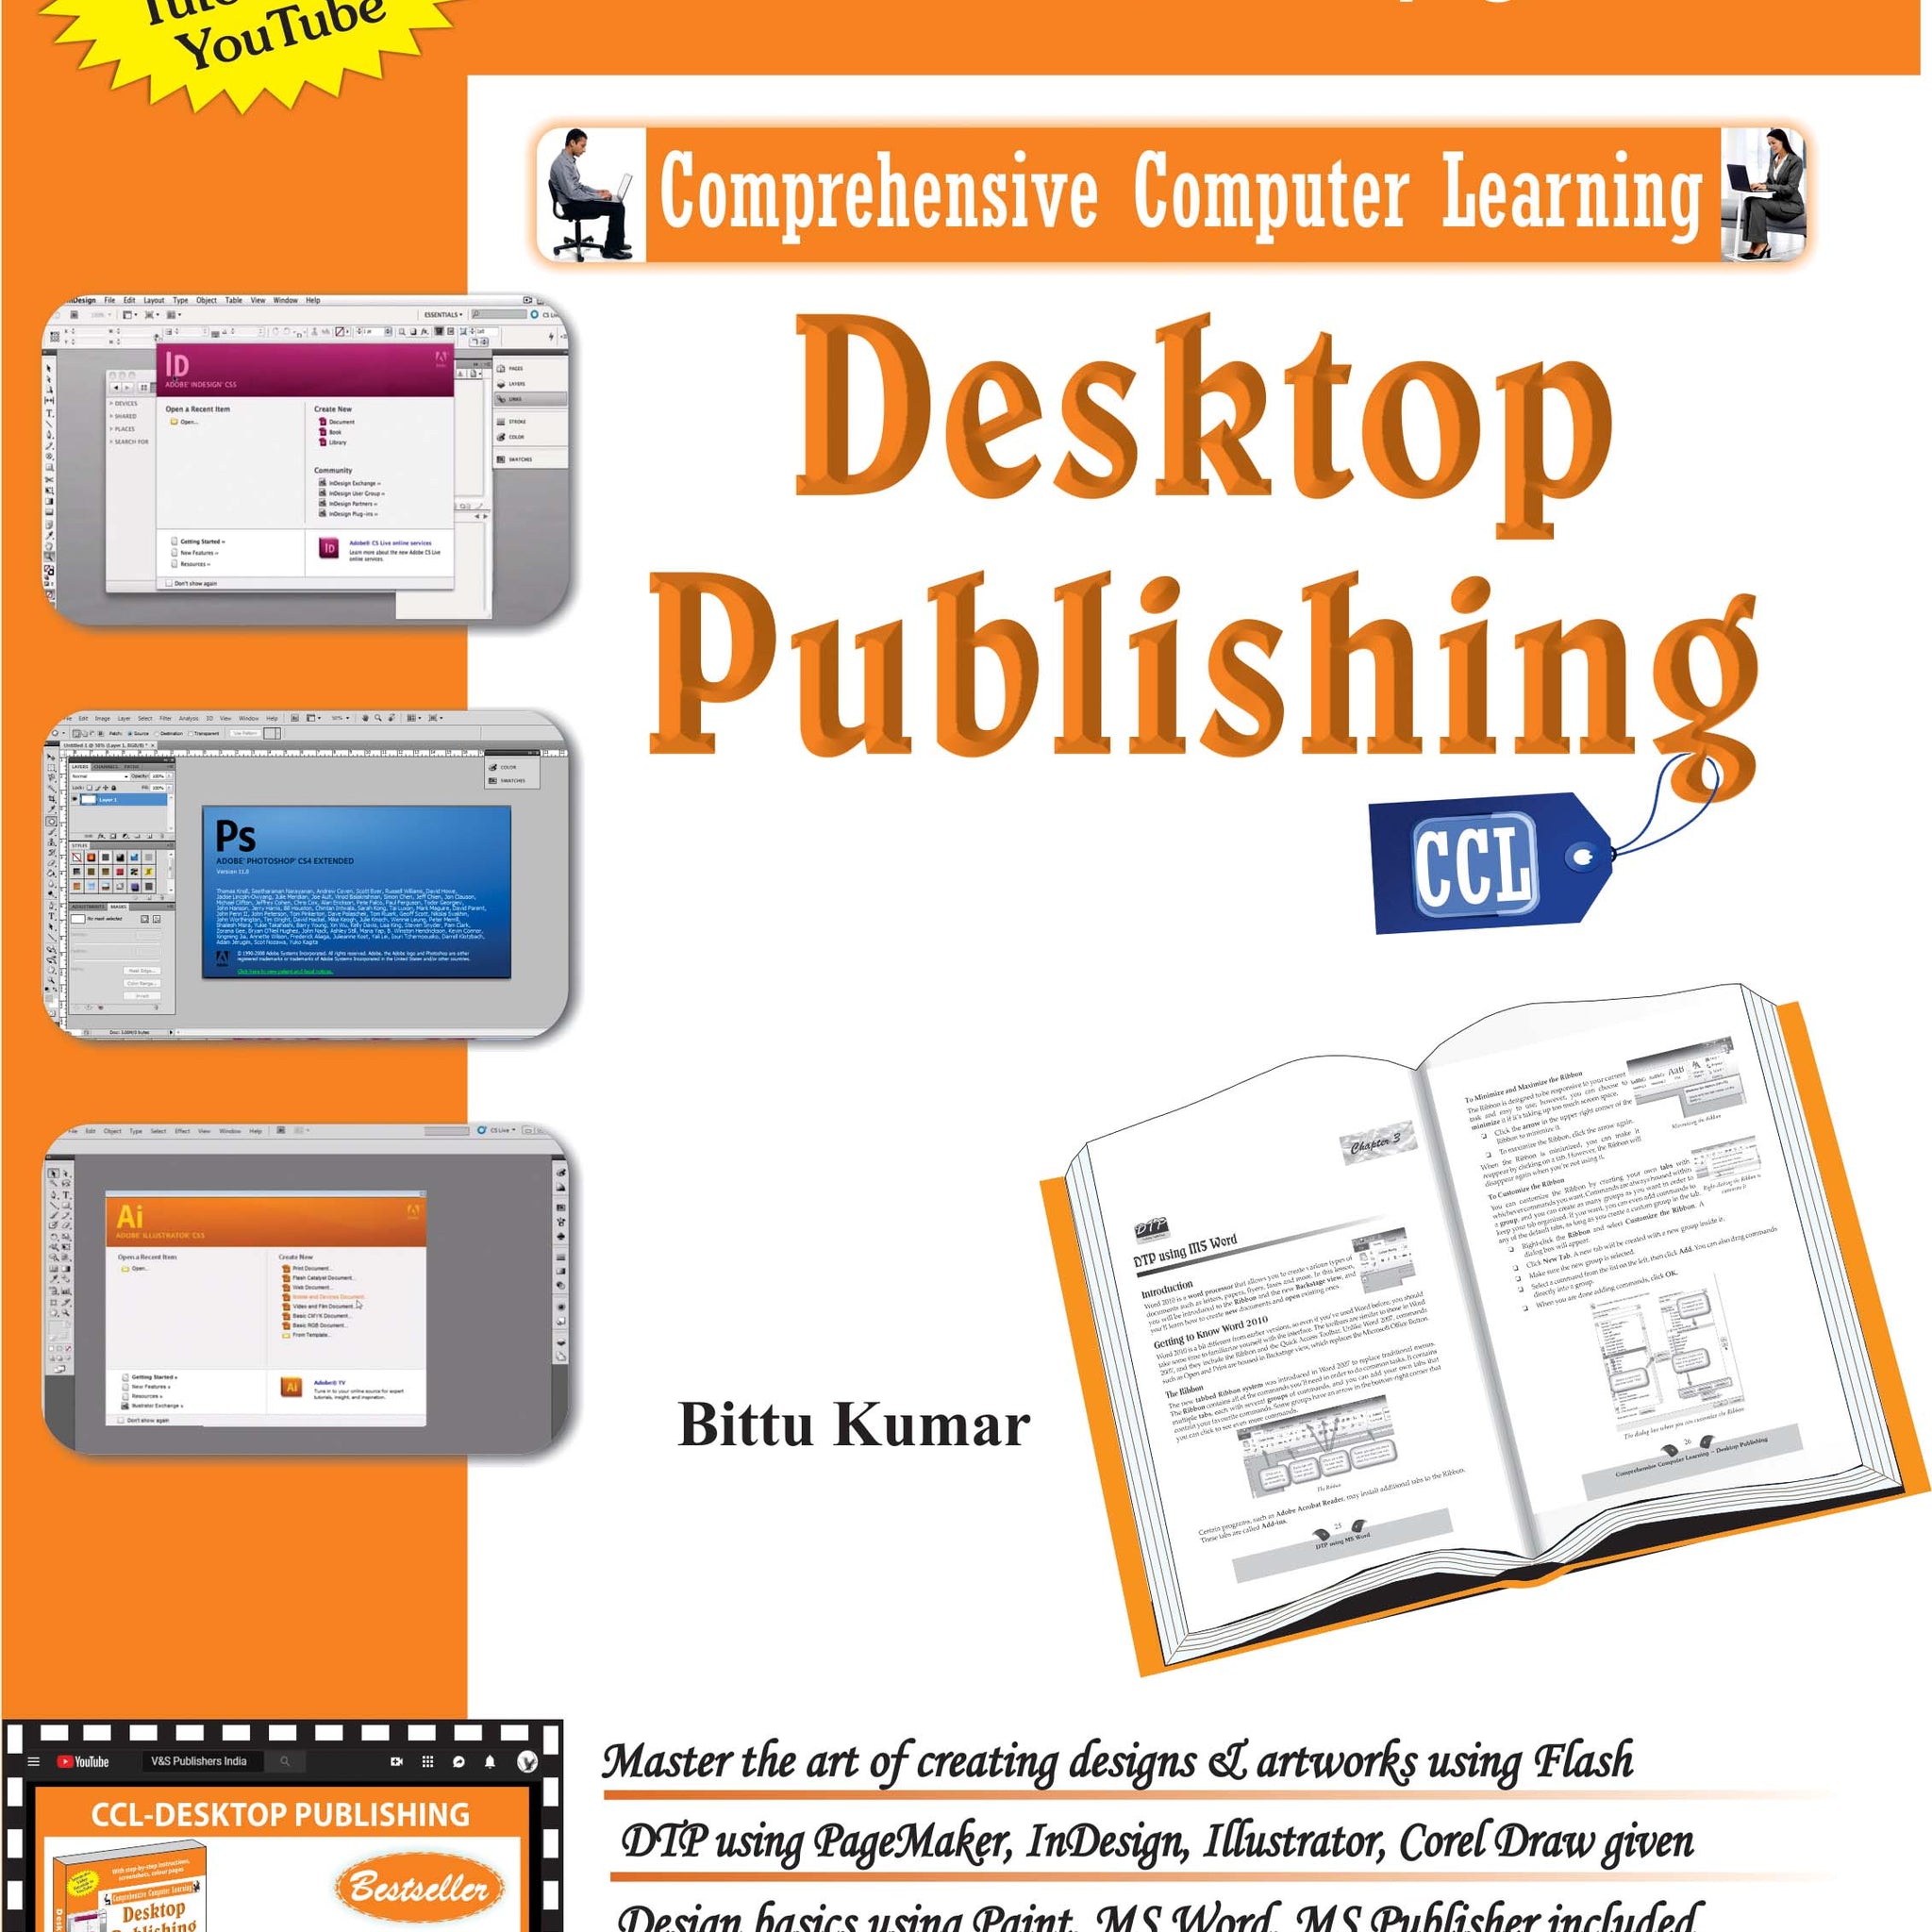 Desktop Publishing (With Youtube AV)